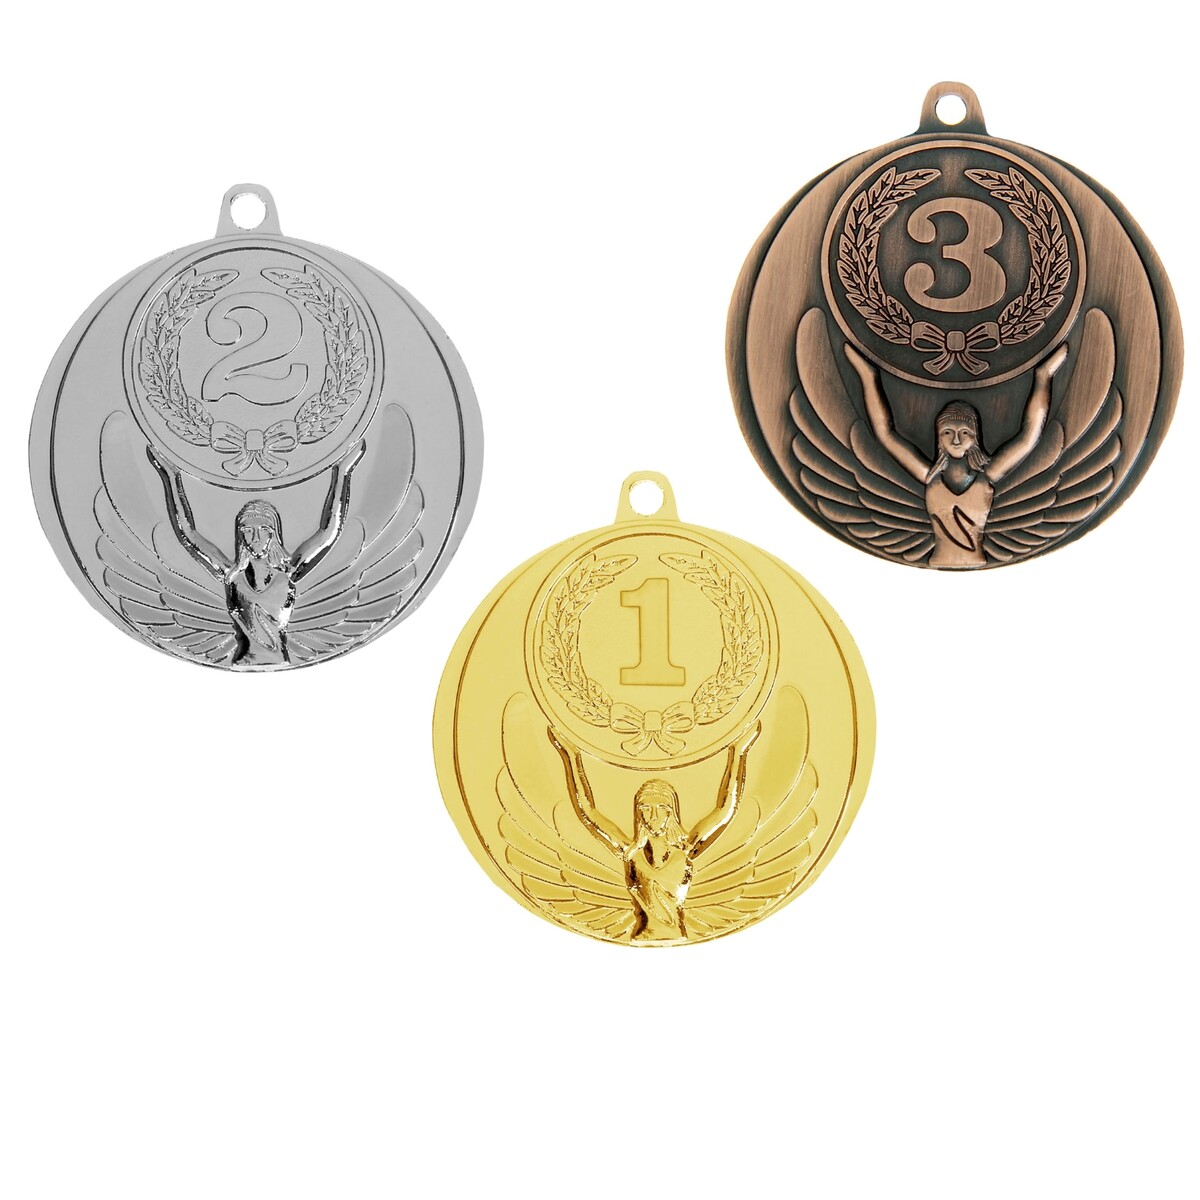 Медаль призовая 017 диам 4,5 см. 3 место. цвет бронз. без ленты медаль призовая 003 диам 5 см 2 место сер без ленты